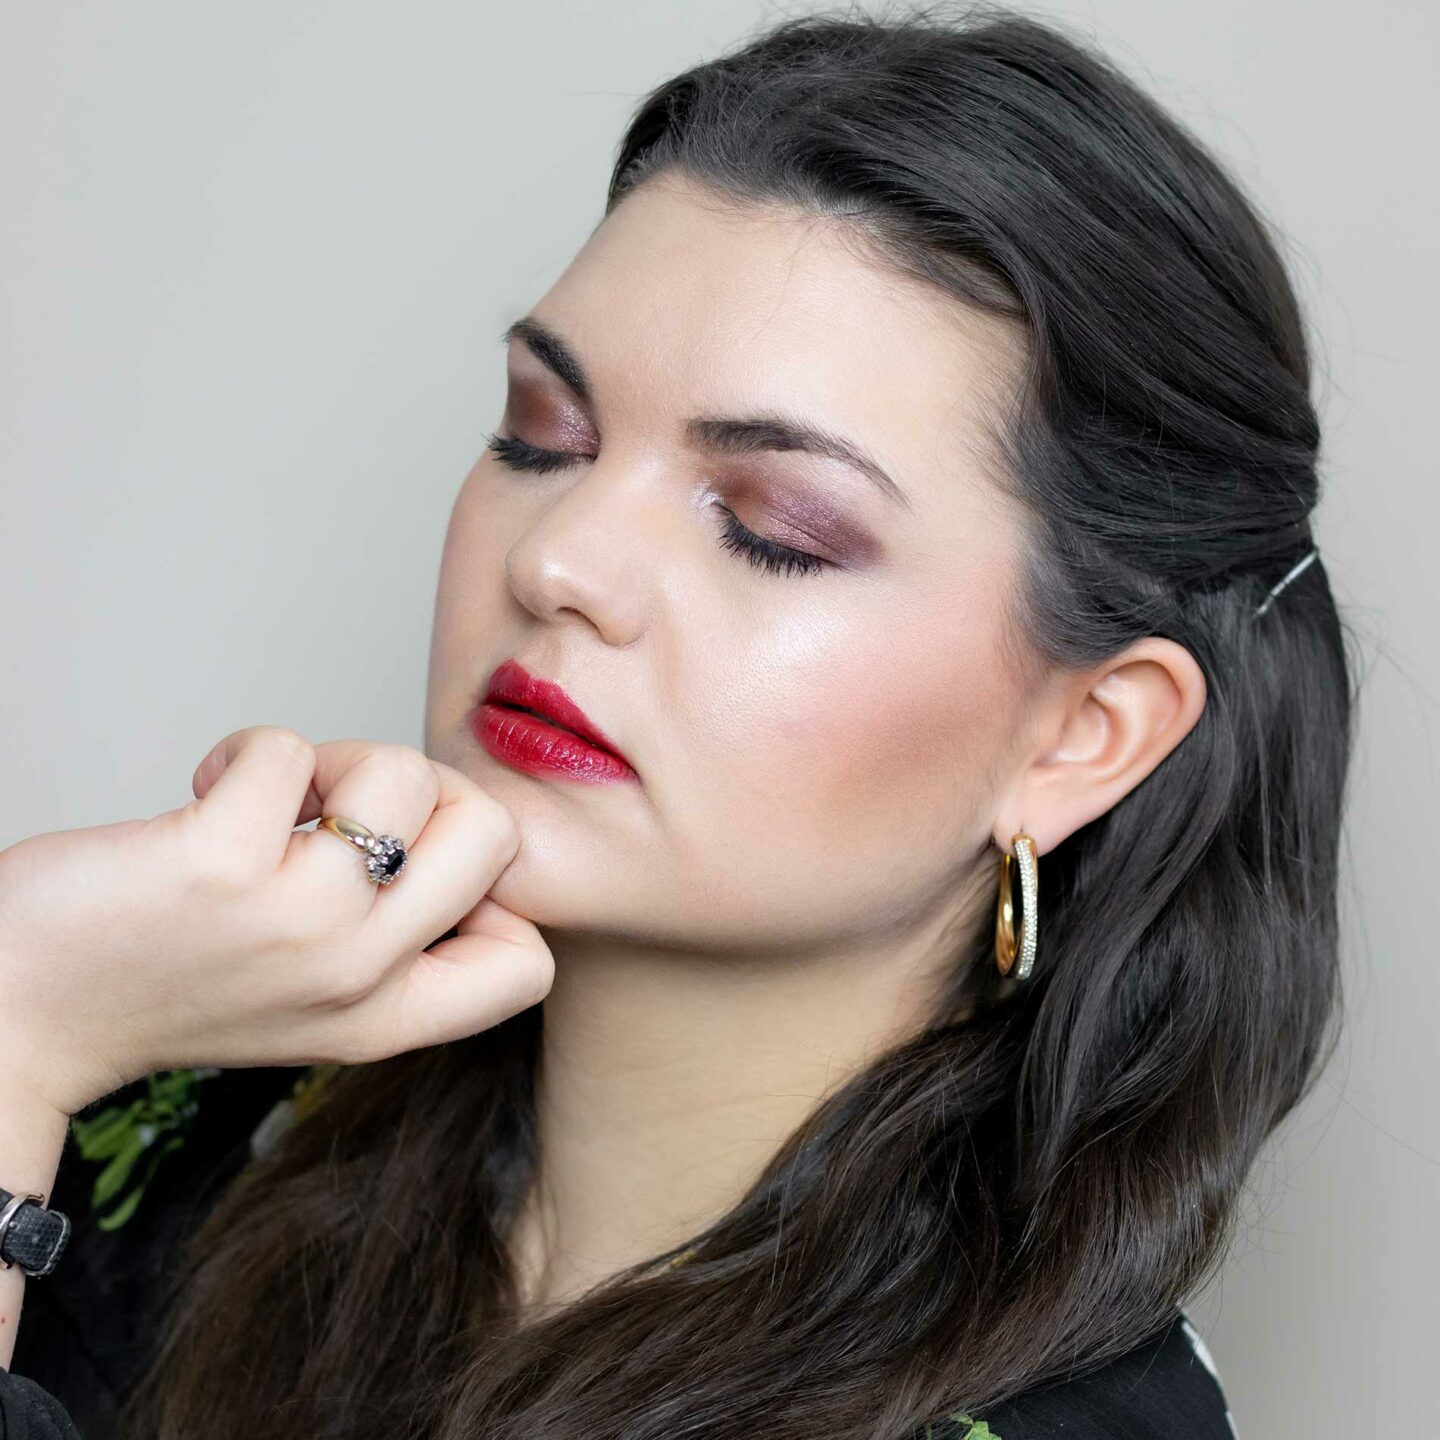 Wangen-Make-Up mit einem Rouge von Charlotte Tilbury in der Farbe Loveglow